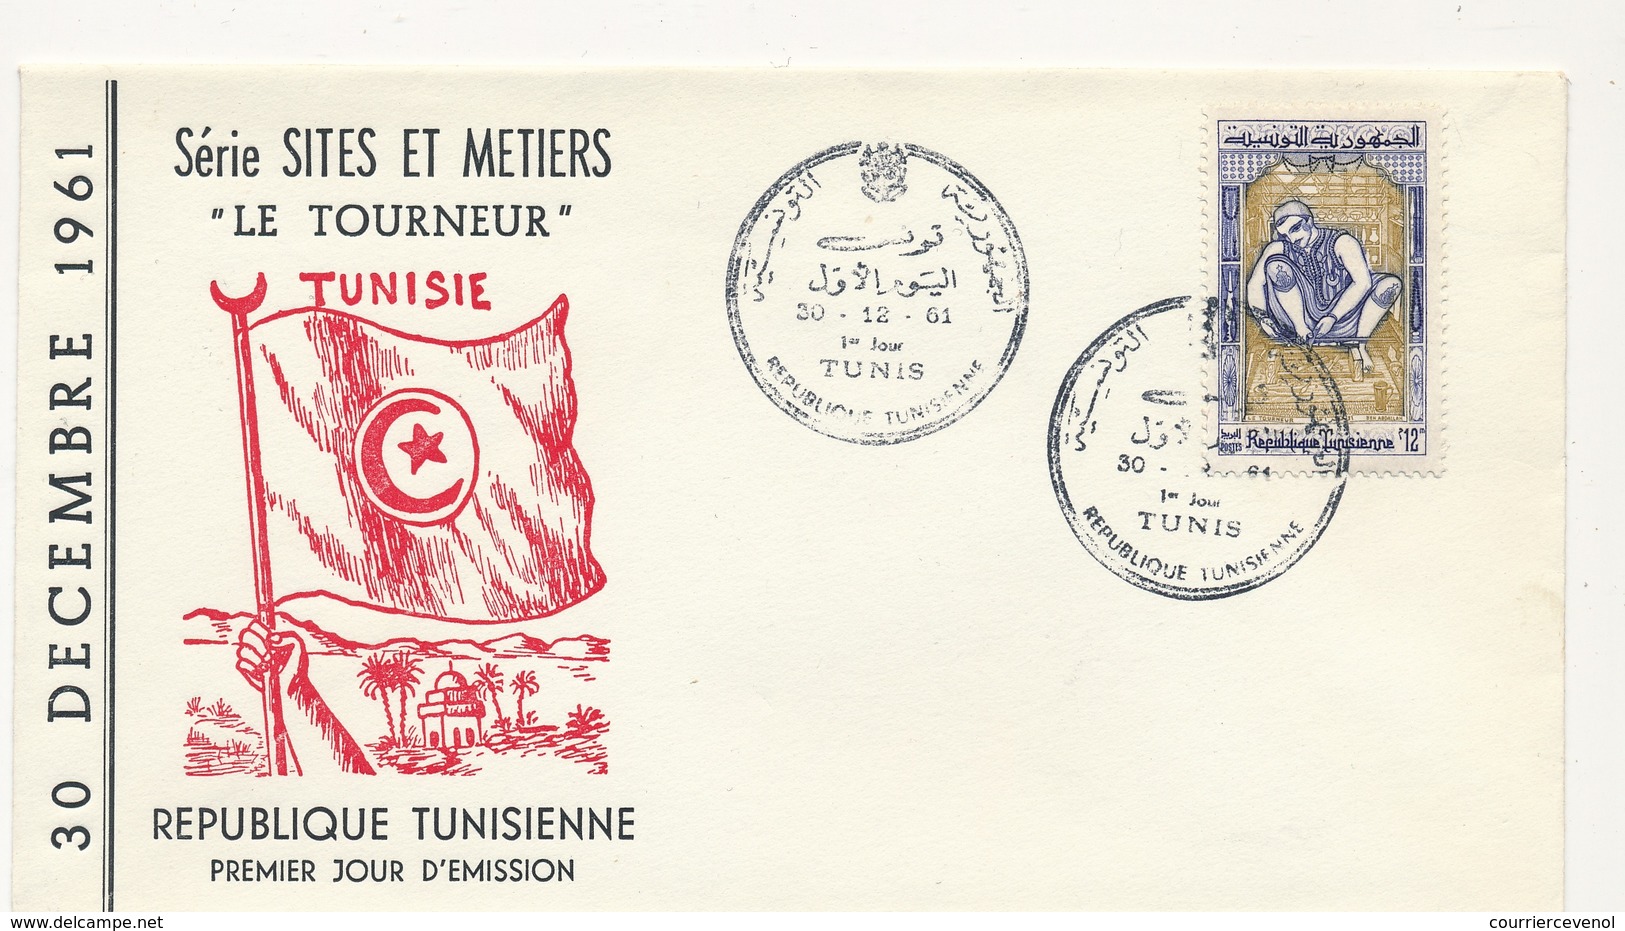 TUNISIE - Enveloppe FDC - Le Tourneur - TUNIS 1961 - Tunisie (1956-...)